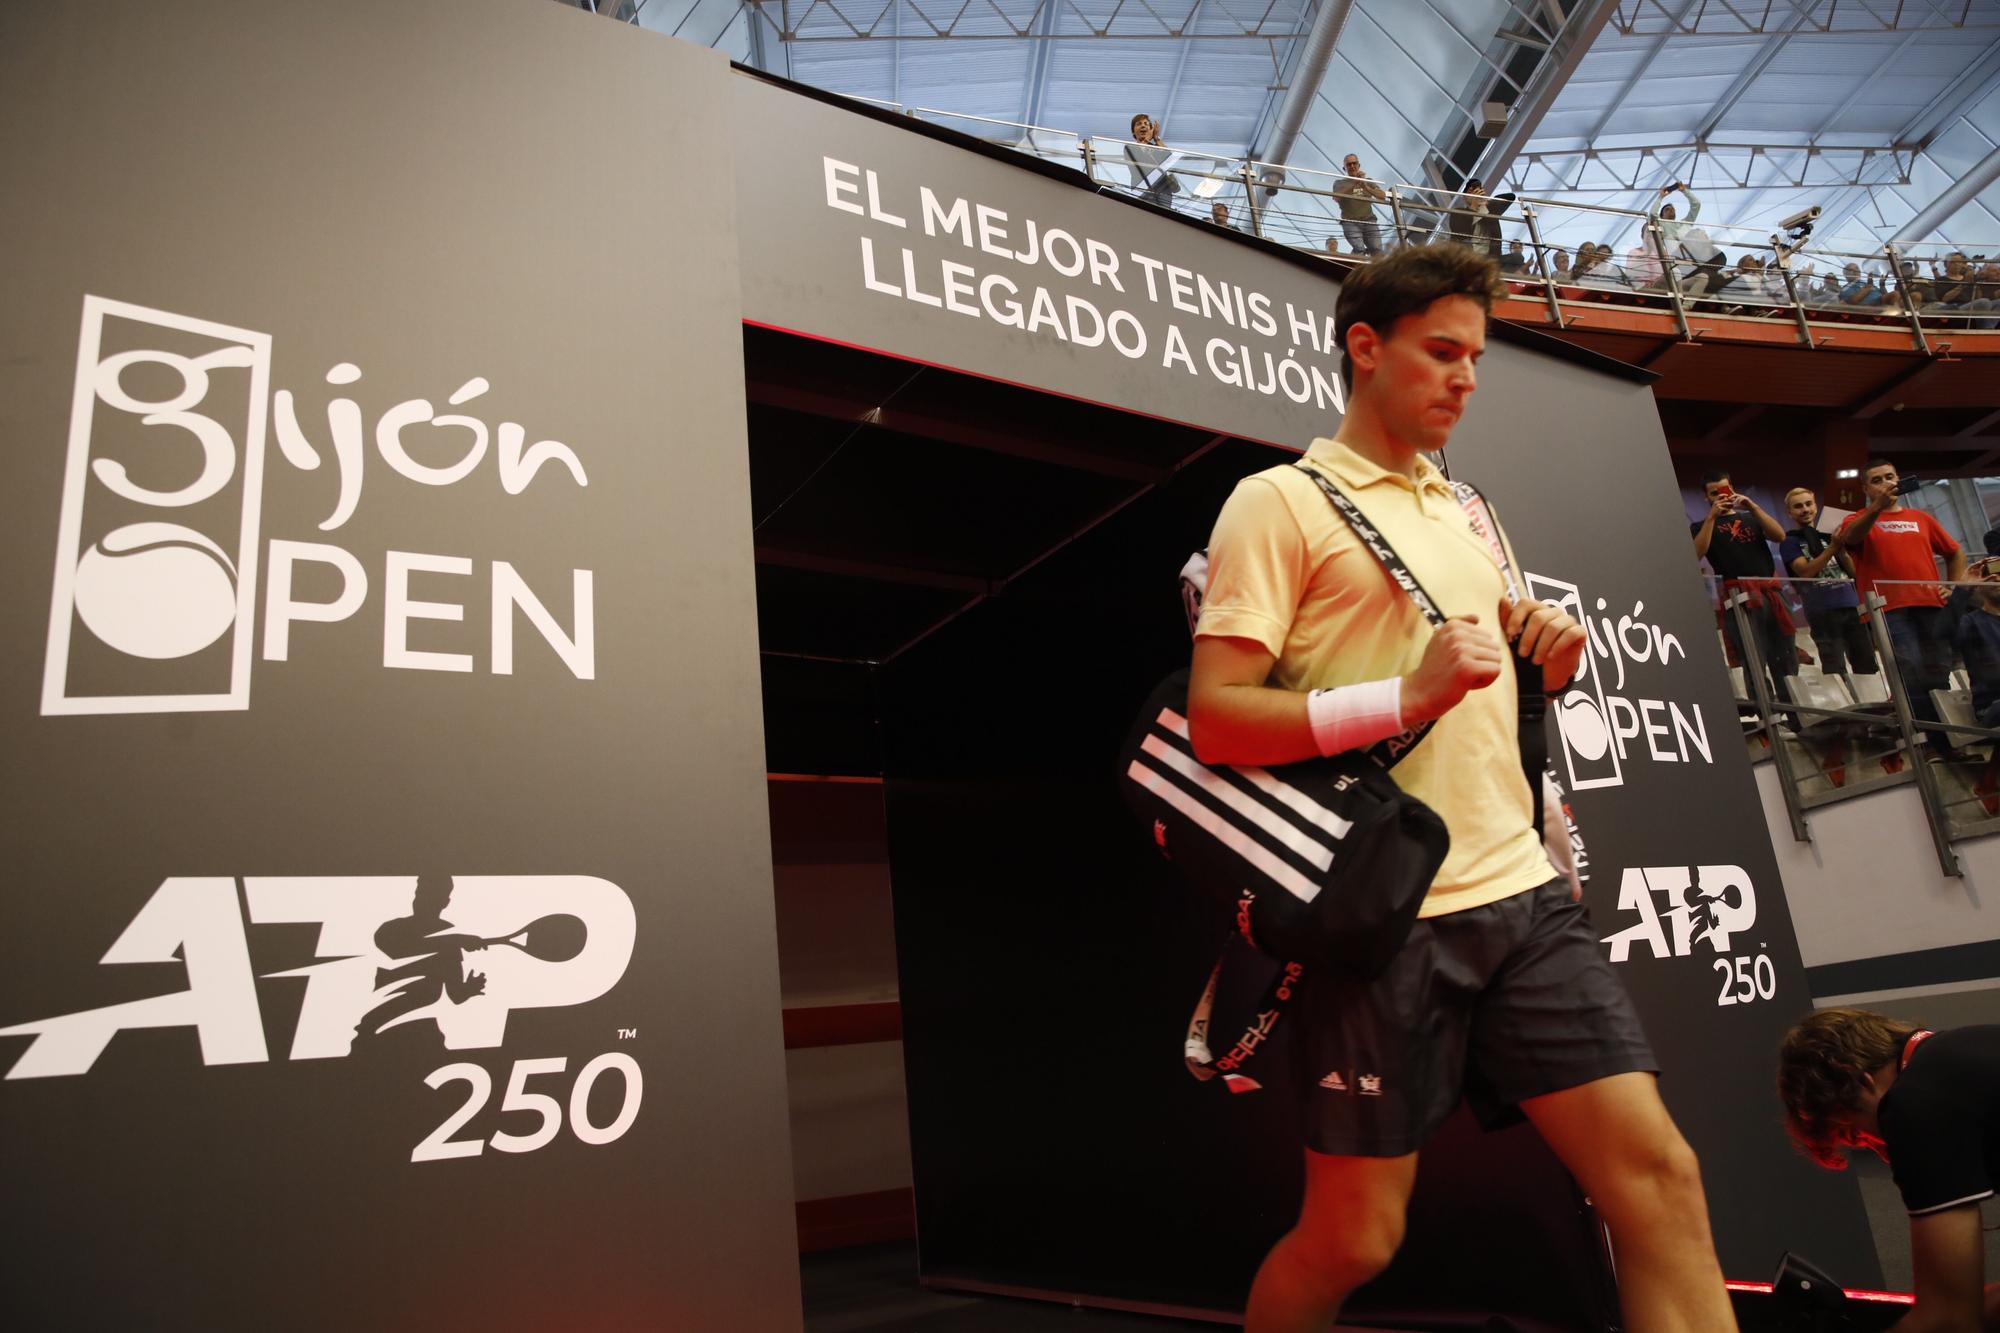 Las imágenes del partido entre Dominic Thiem y Joao Sousa en el Open Gijón